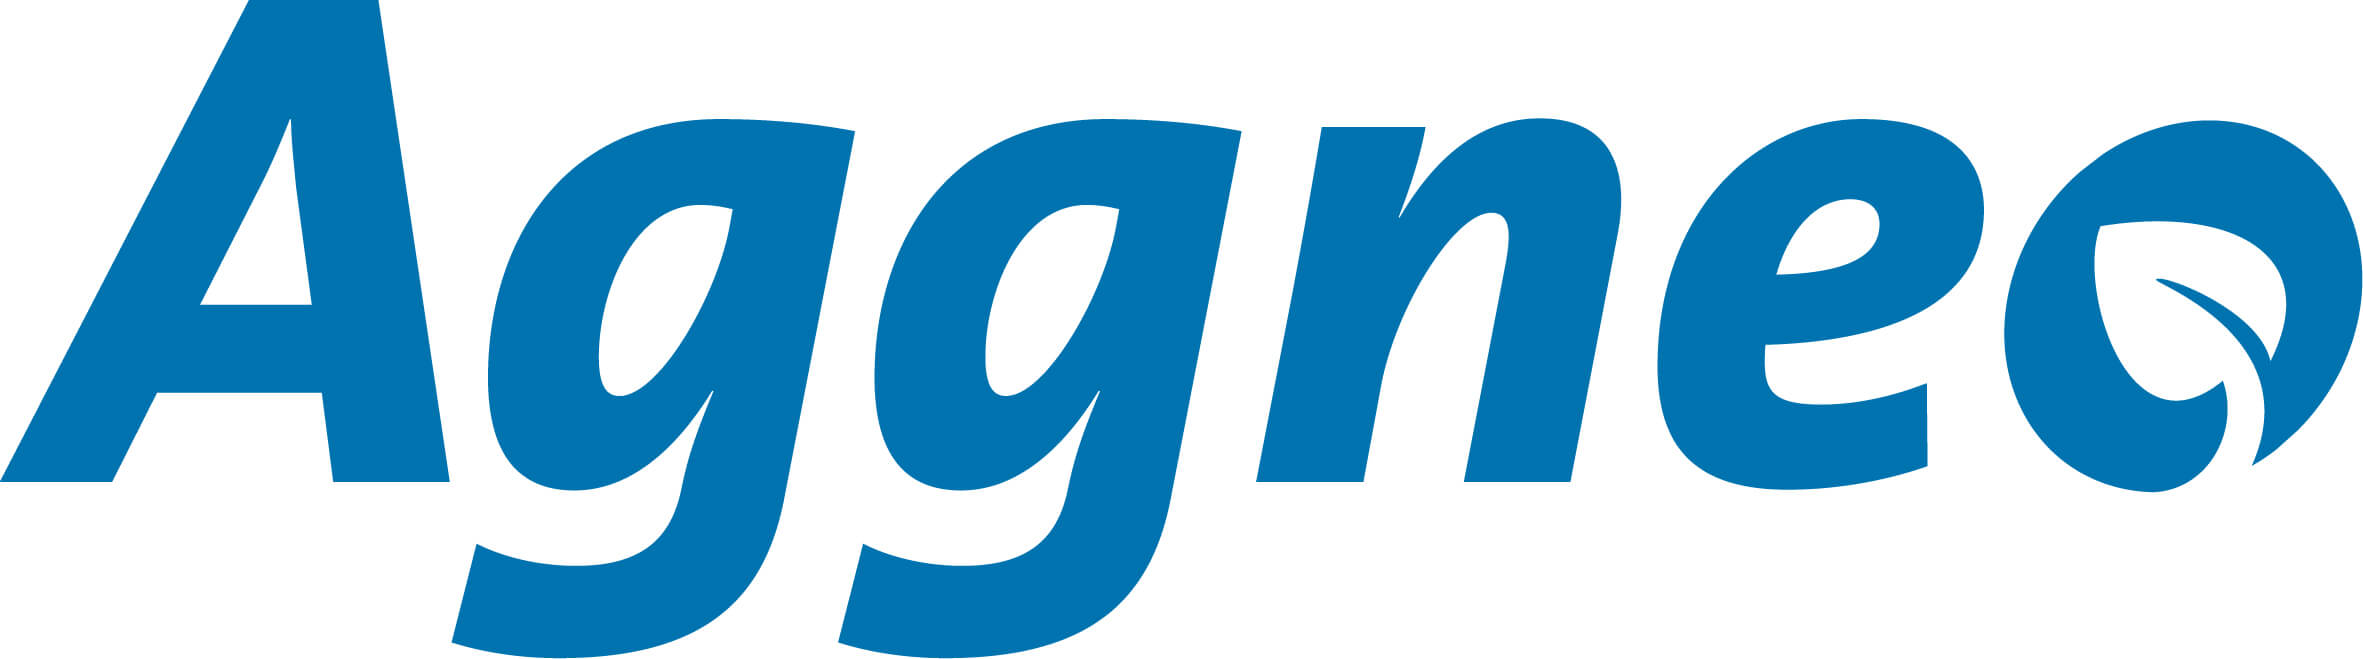 Aggneo logo srgb